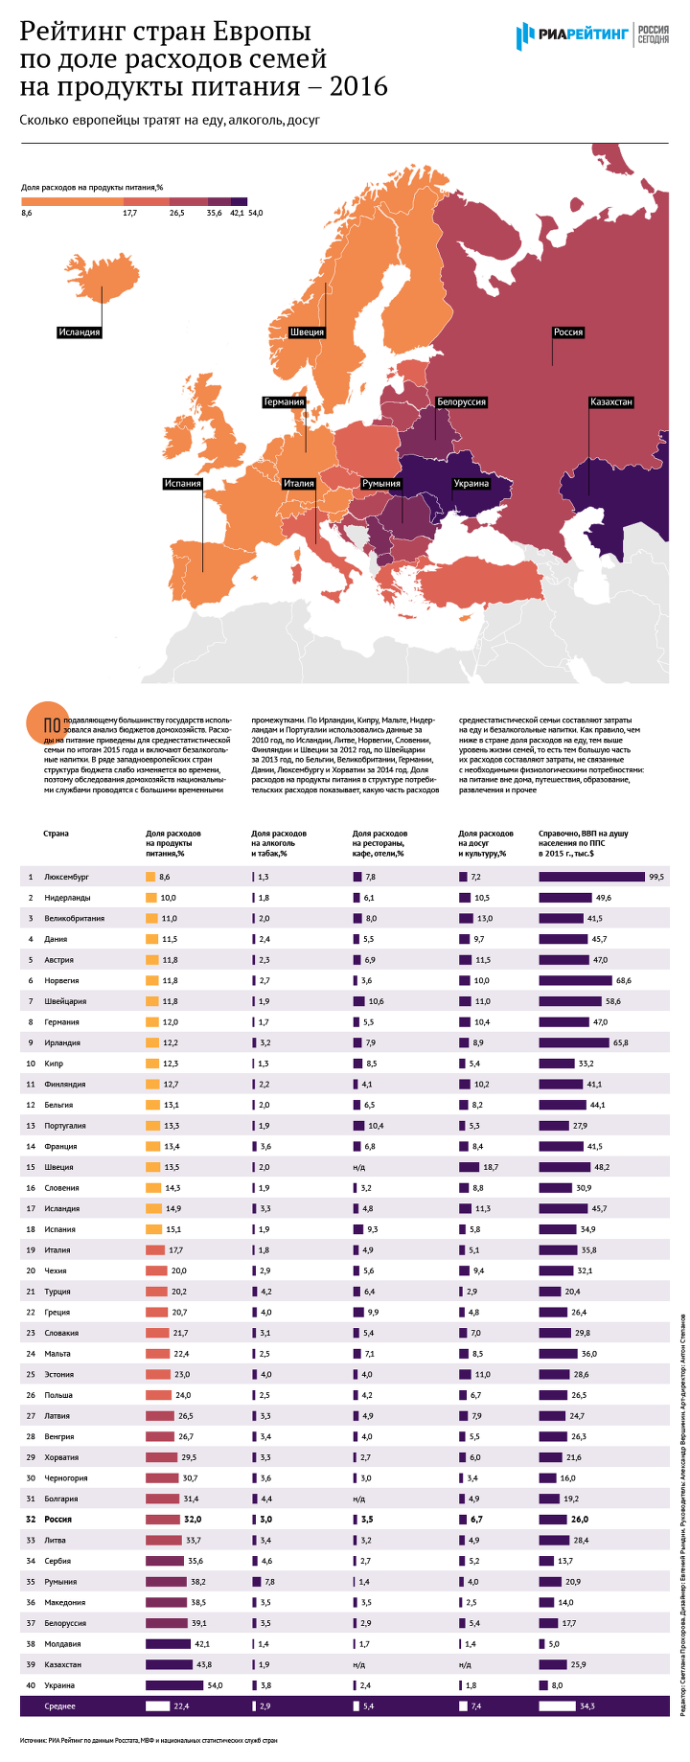  рейтинг стран Европы по затратам на продукты питания и услуги 2016 год